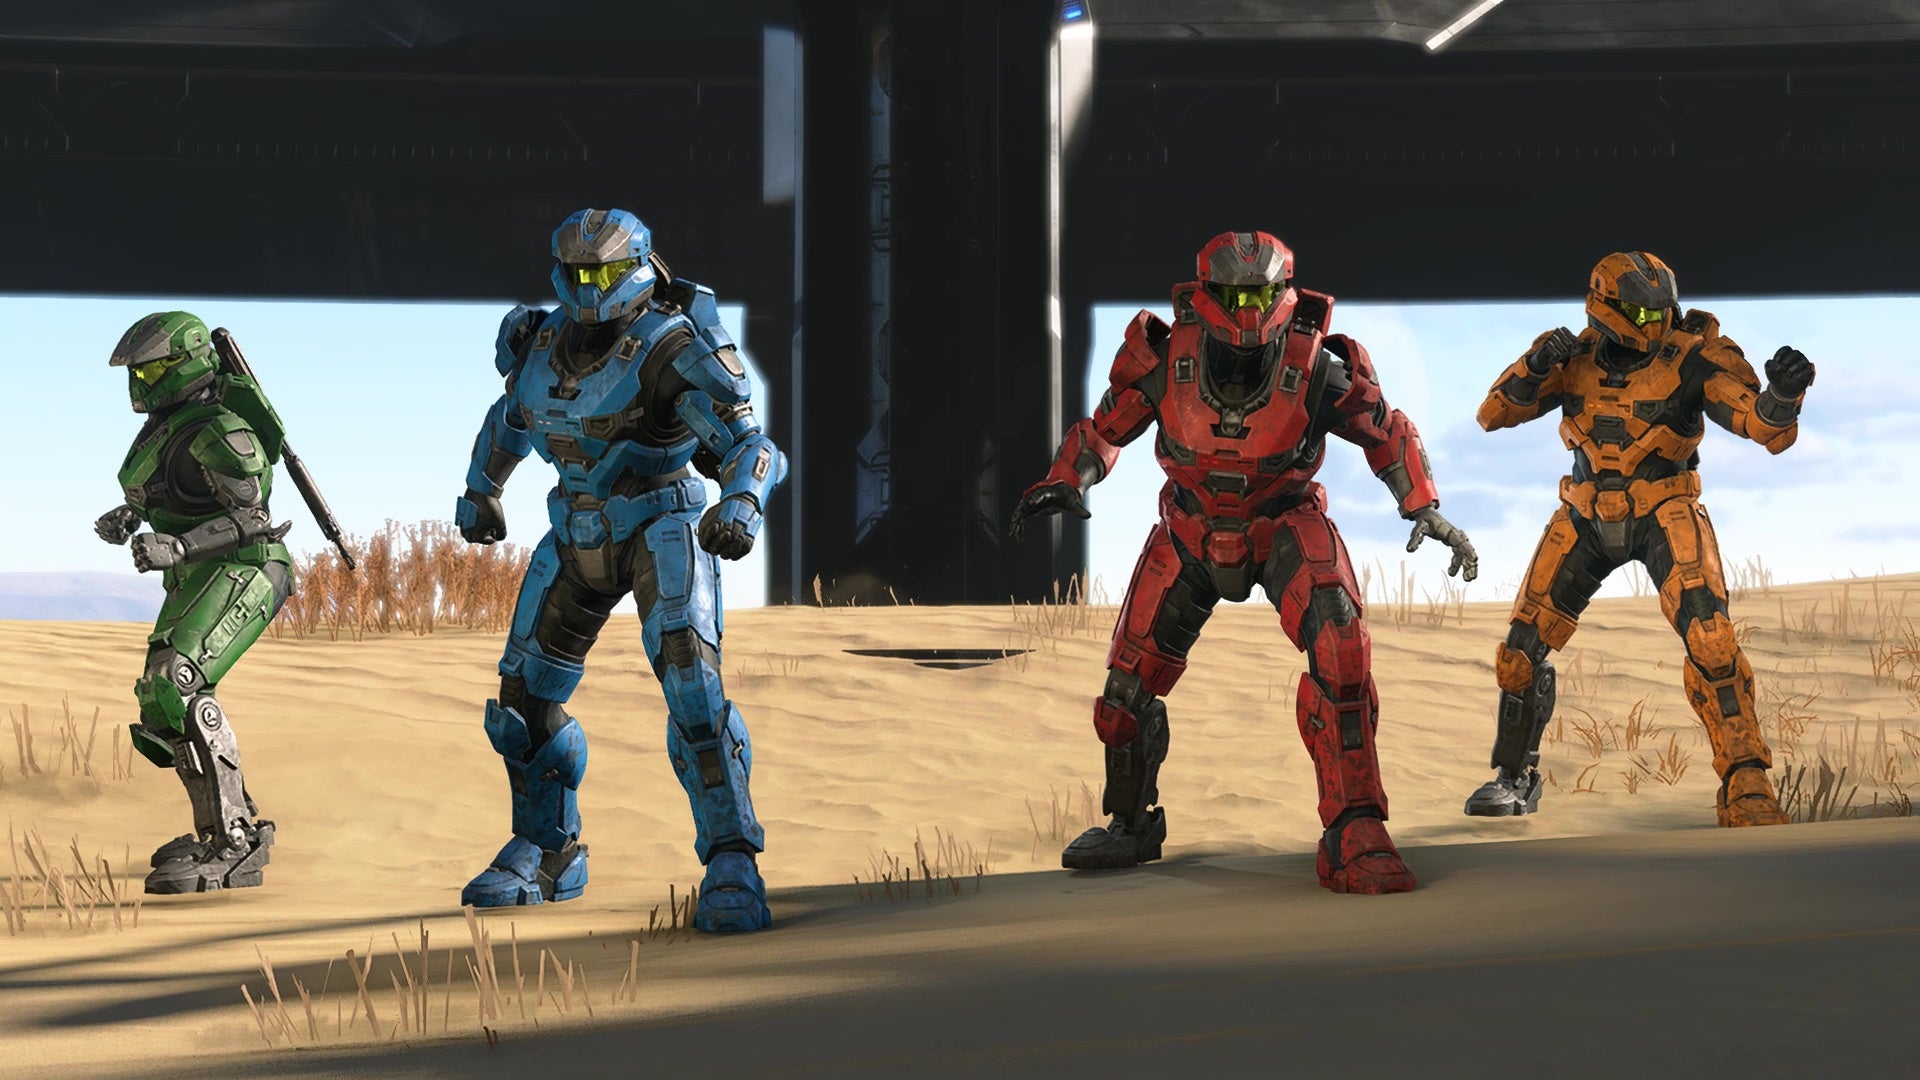 Quatro espartanos, todos com cores primárias de rock, estão prontos para a batalha em Halo Infinite.